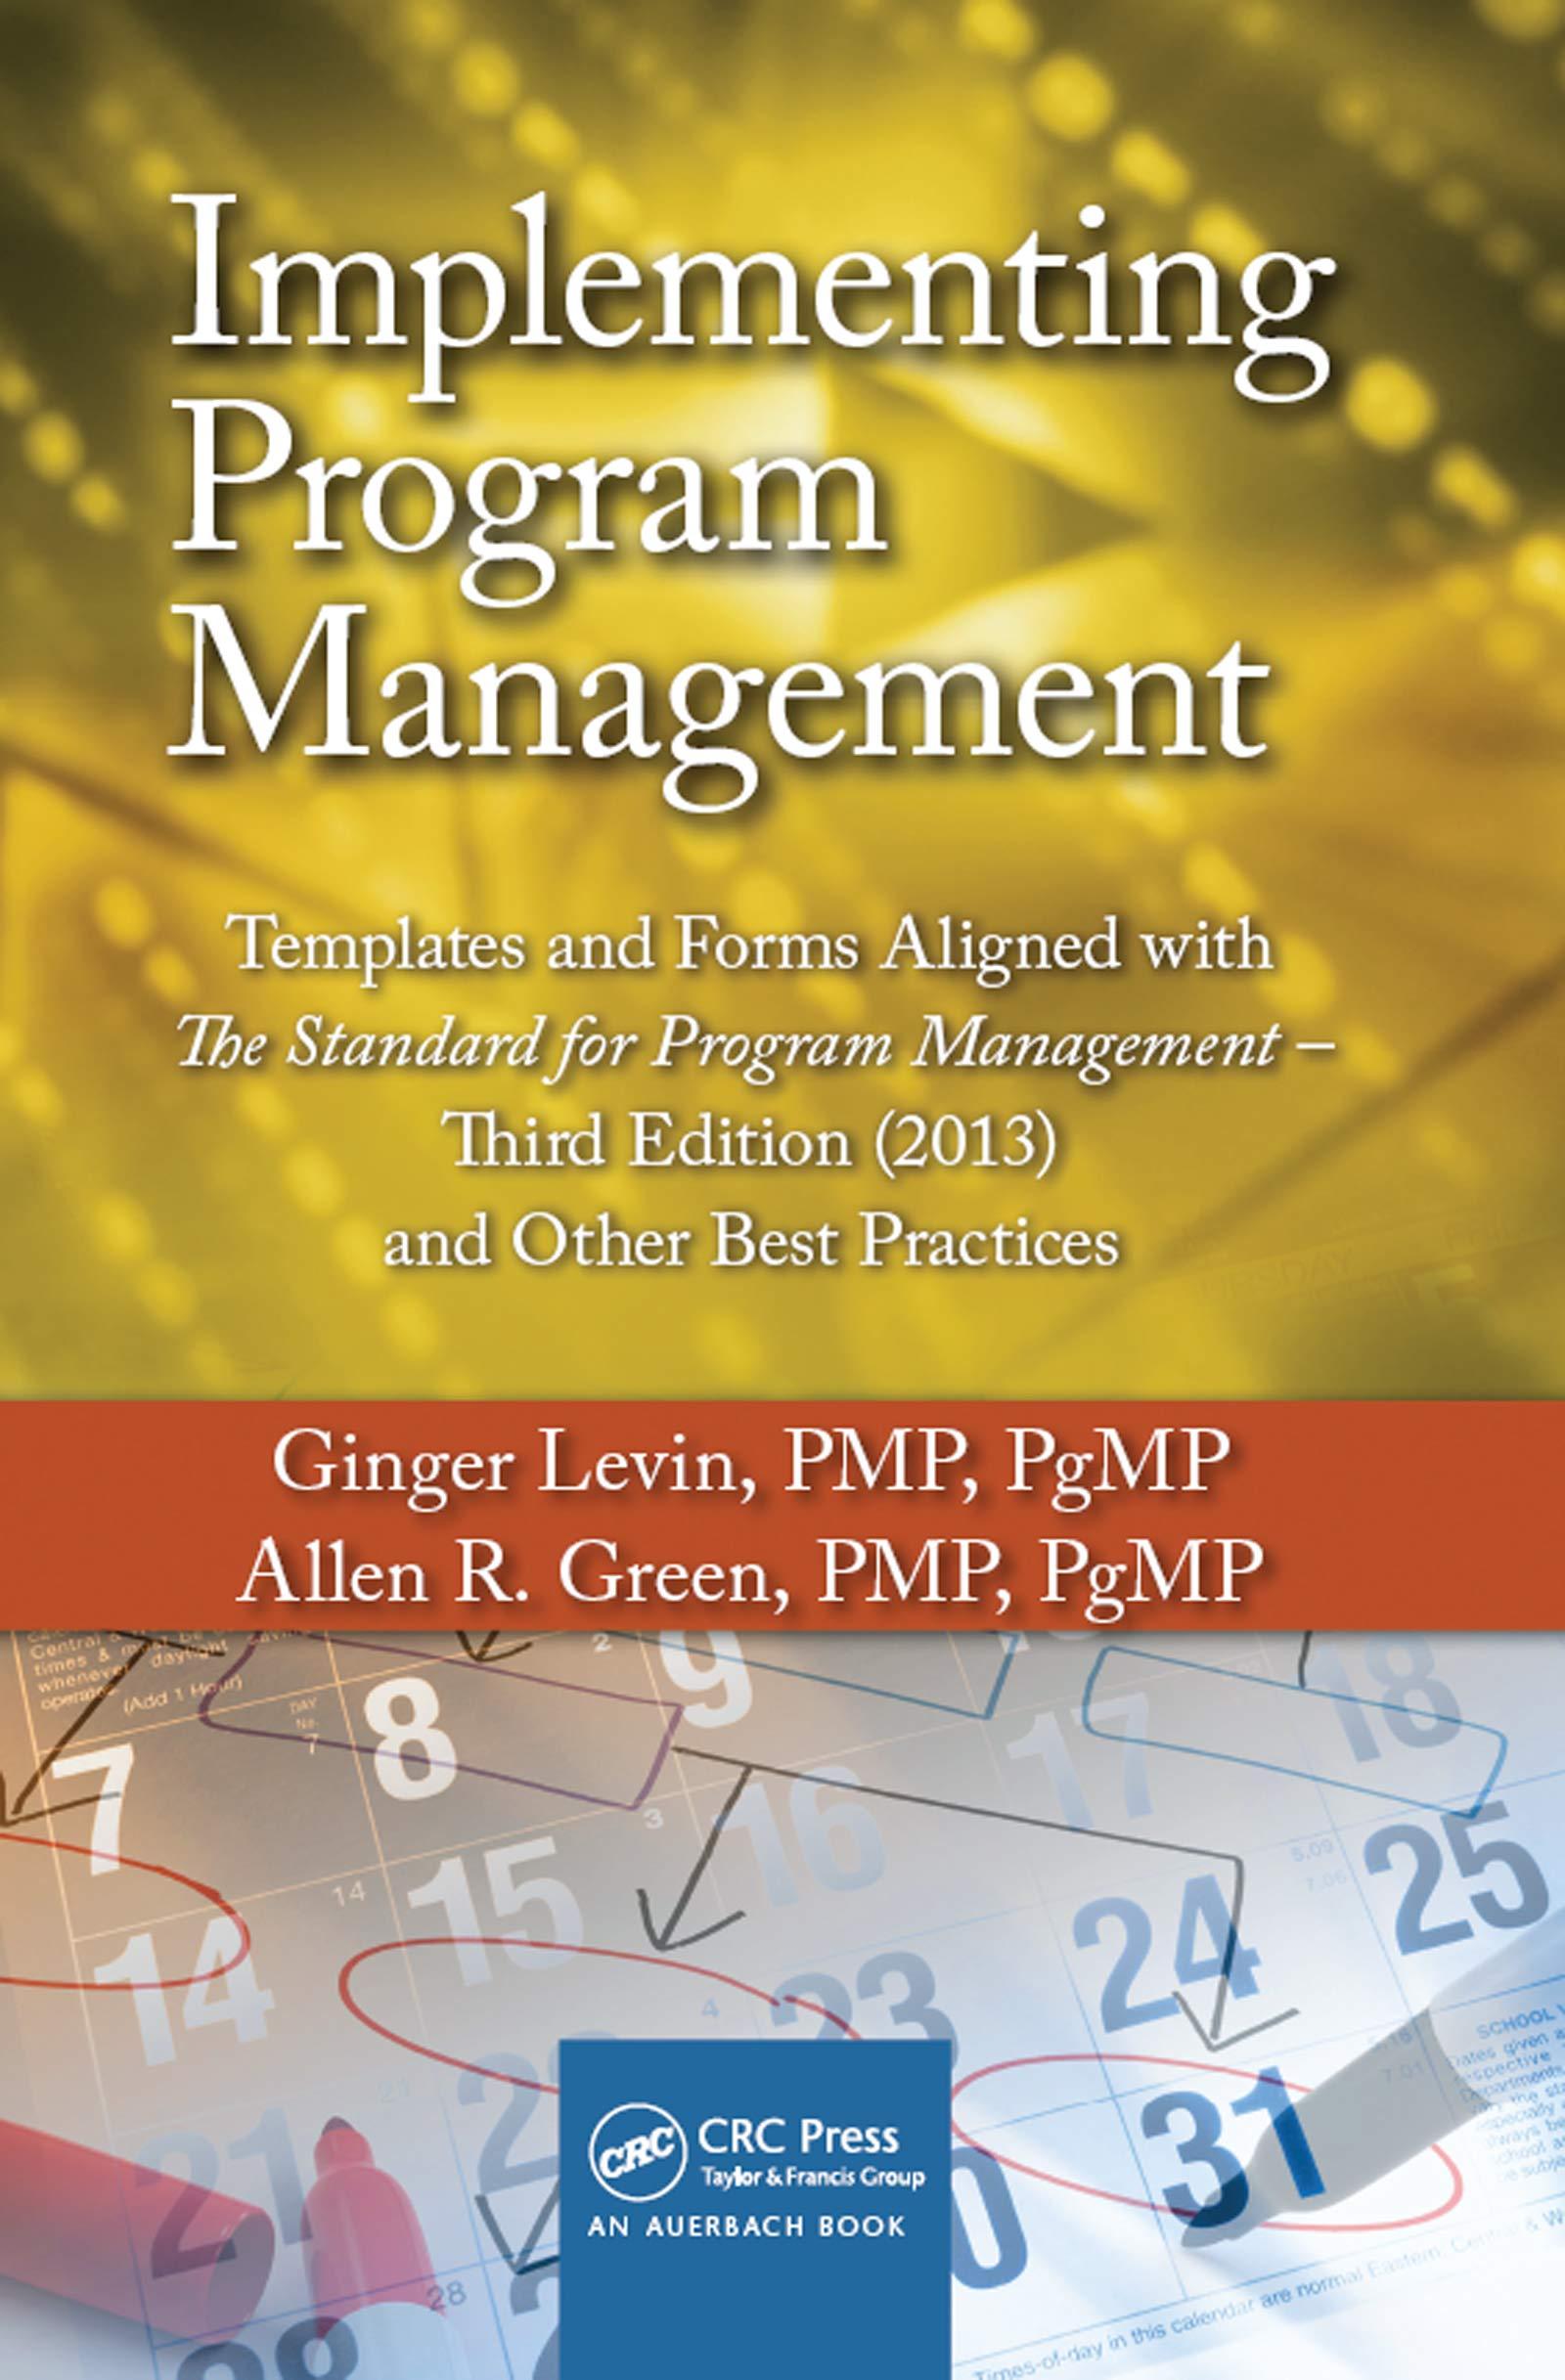 implementing program management implementing program management 3rd edition ginger levin, allen r. green